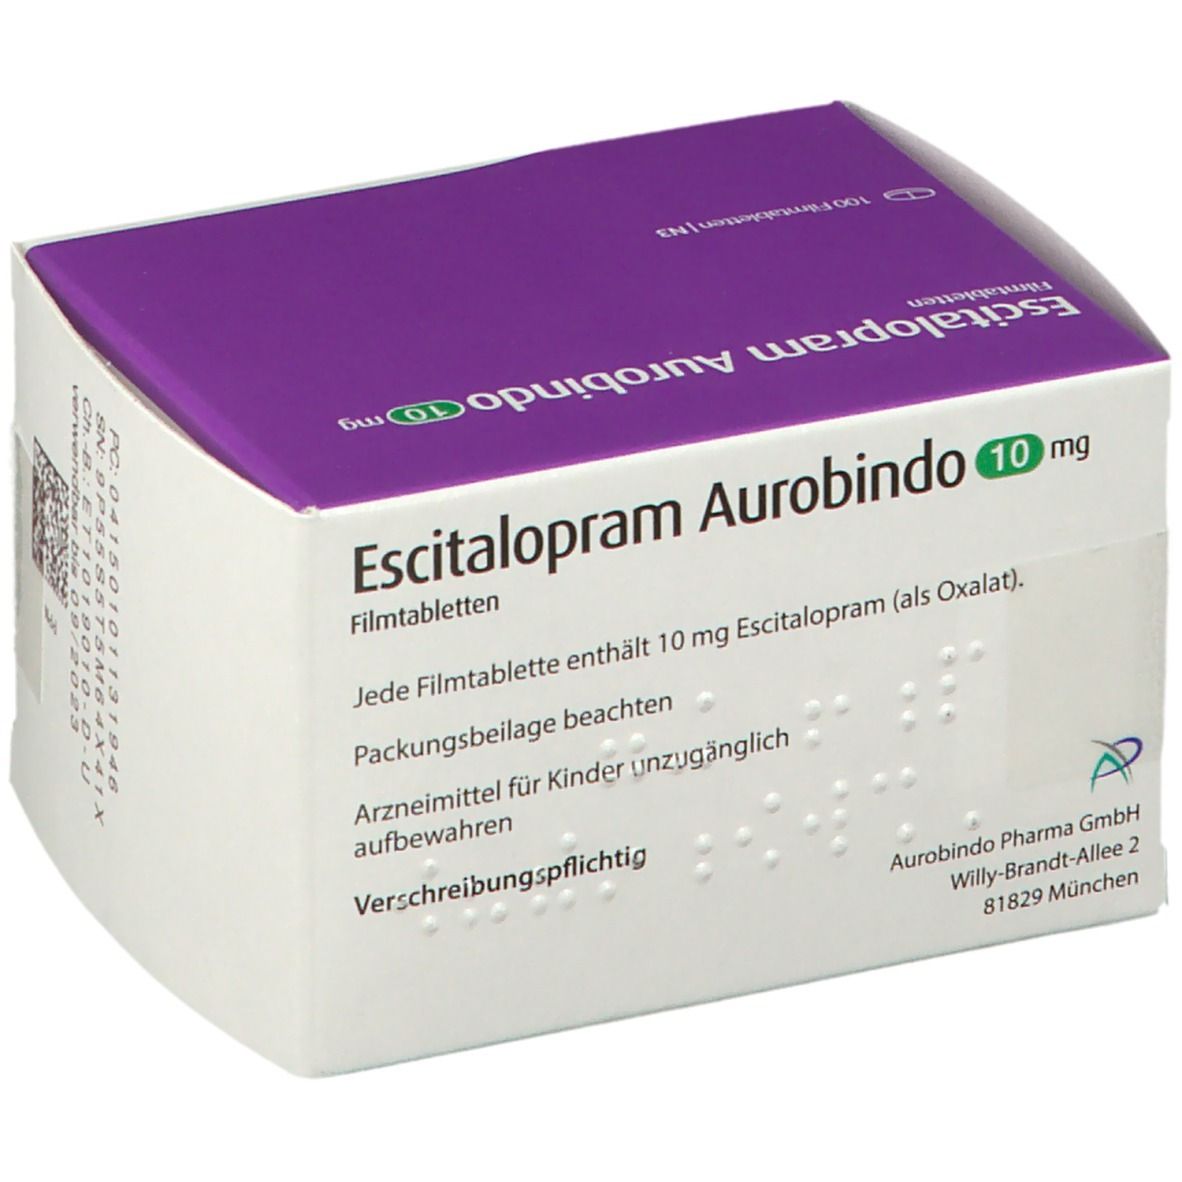 Escitalopram Aurobindo 10 mg